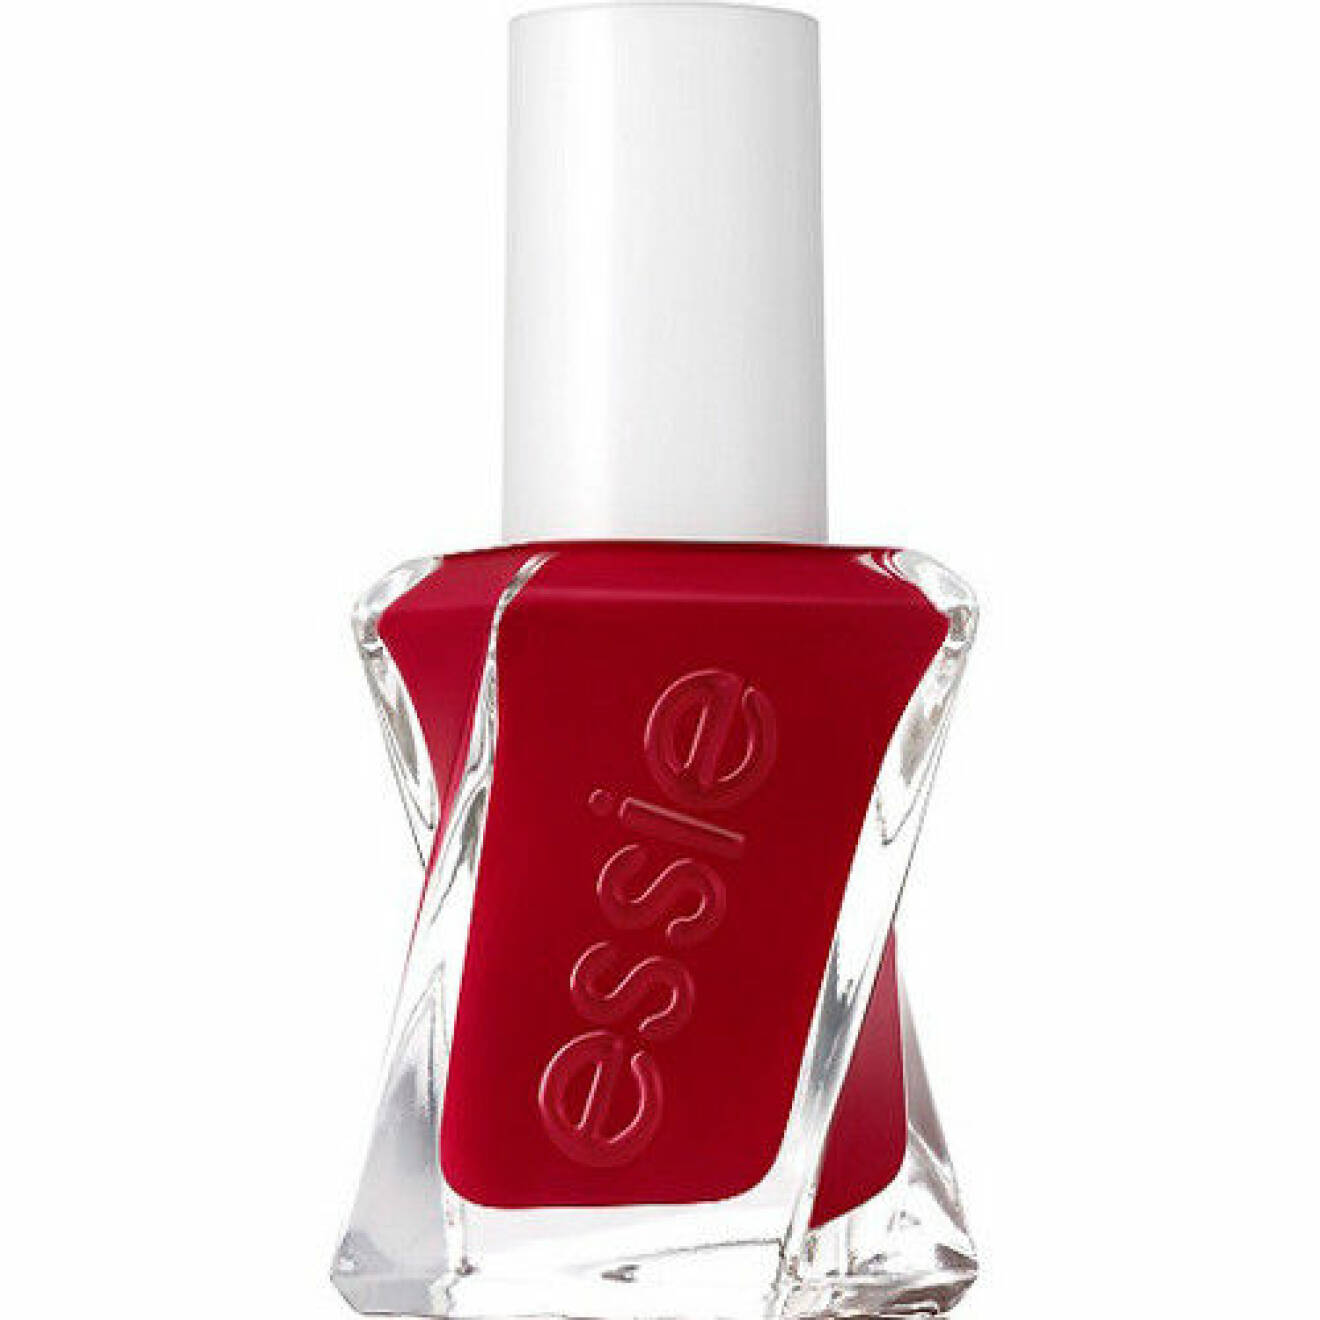 Rött nagellack från Essie